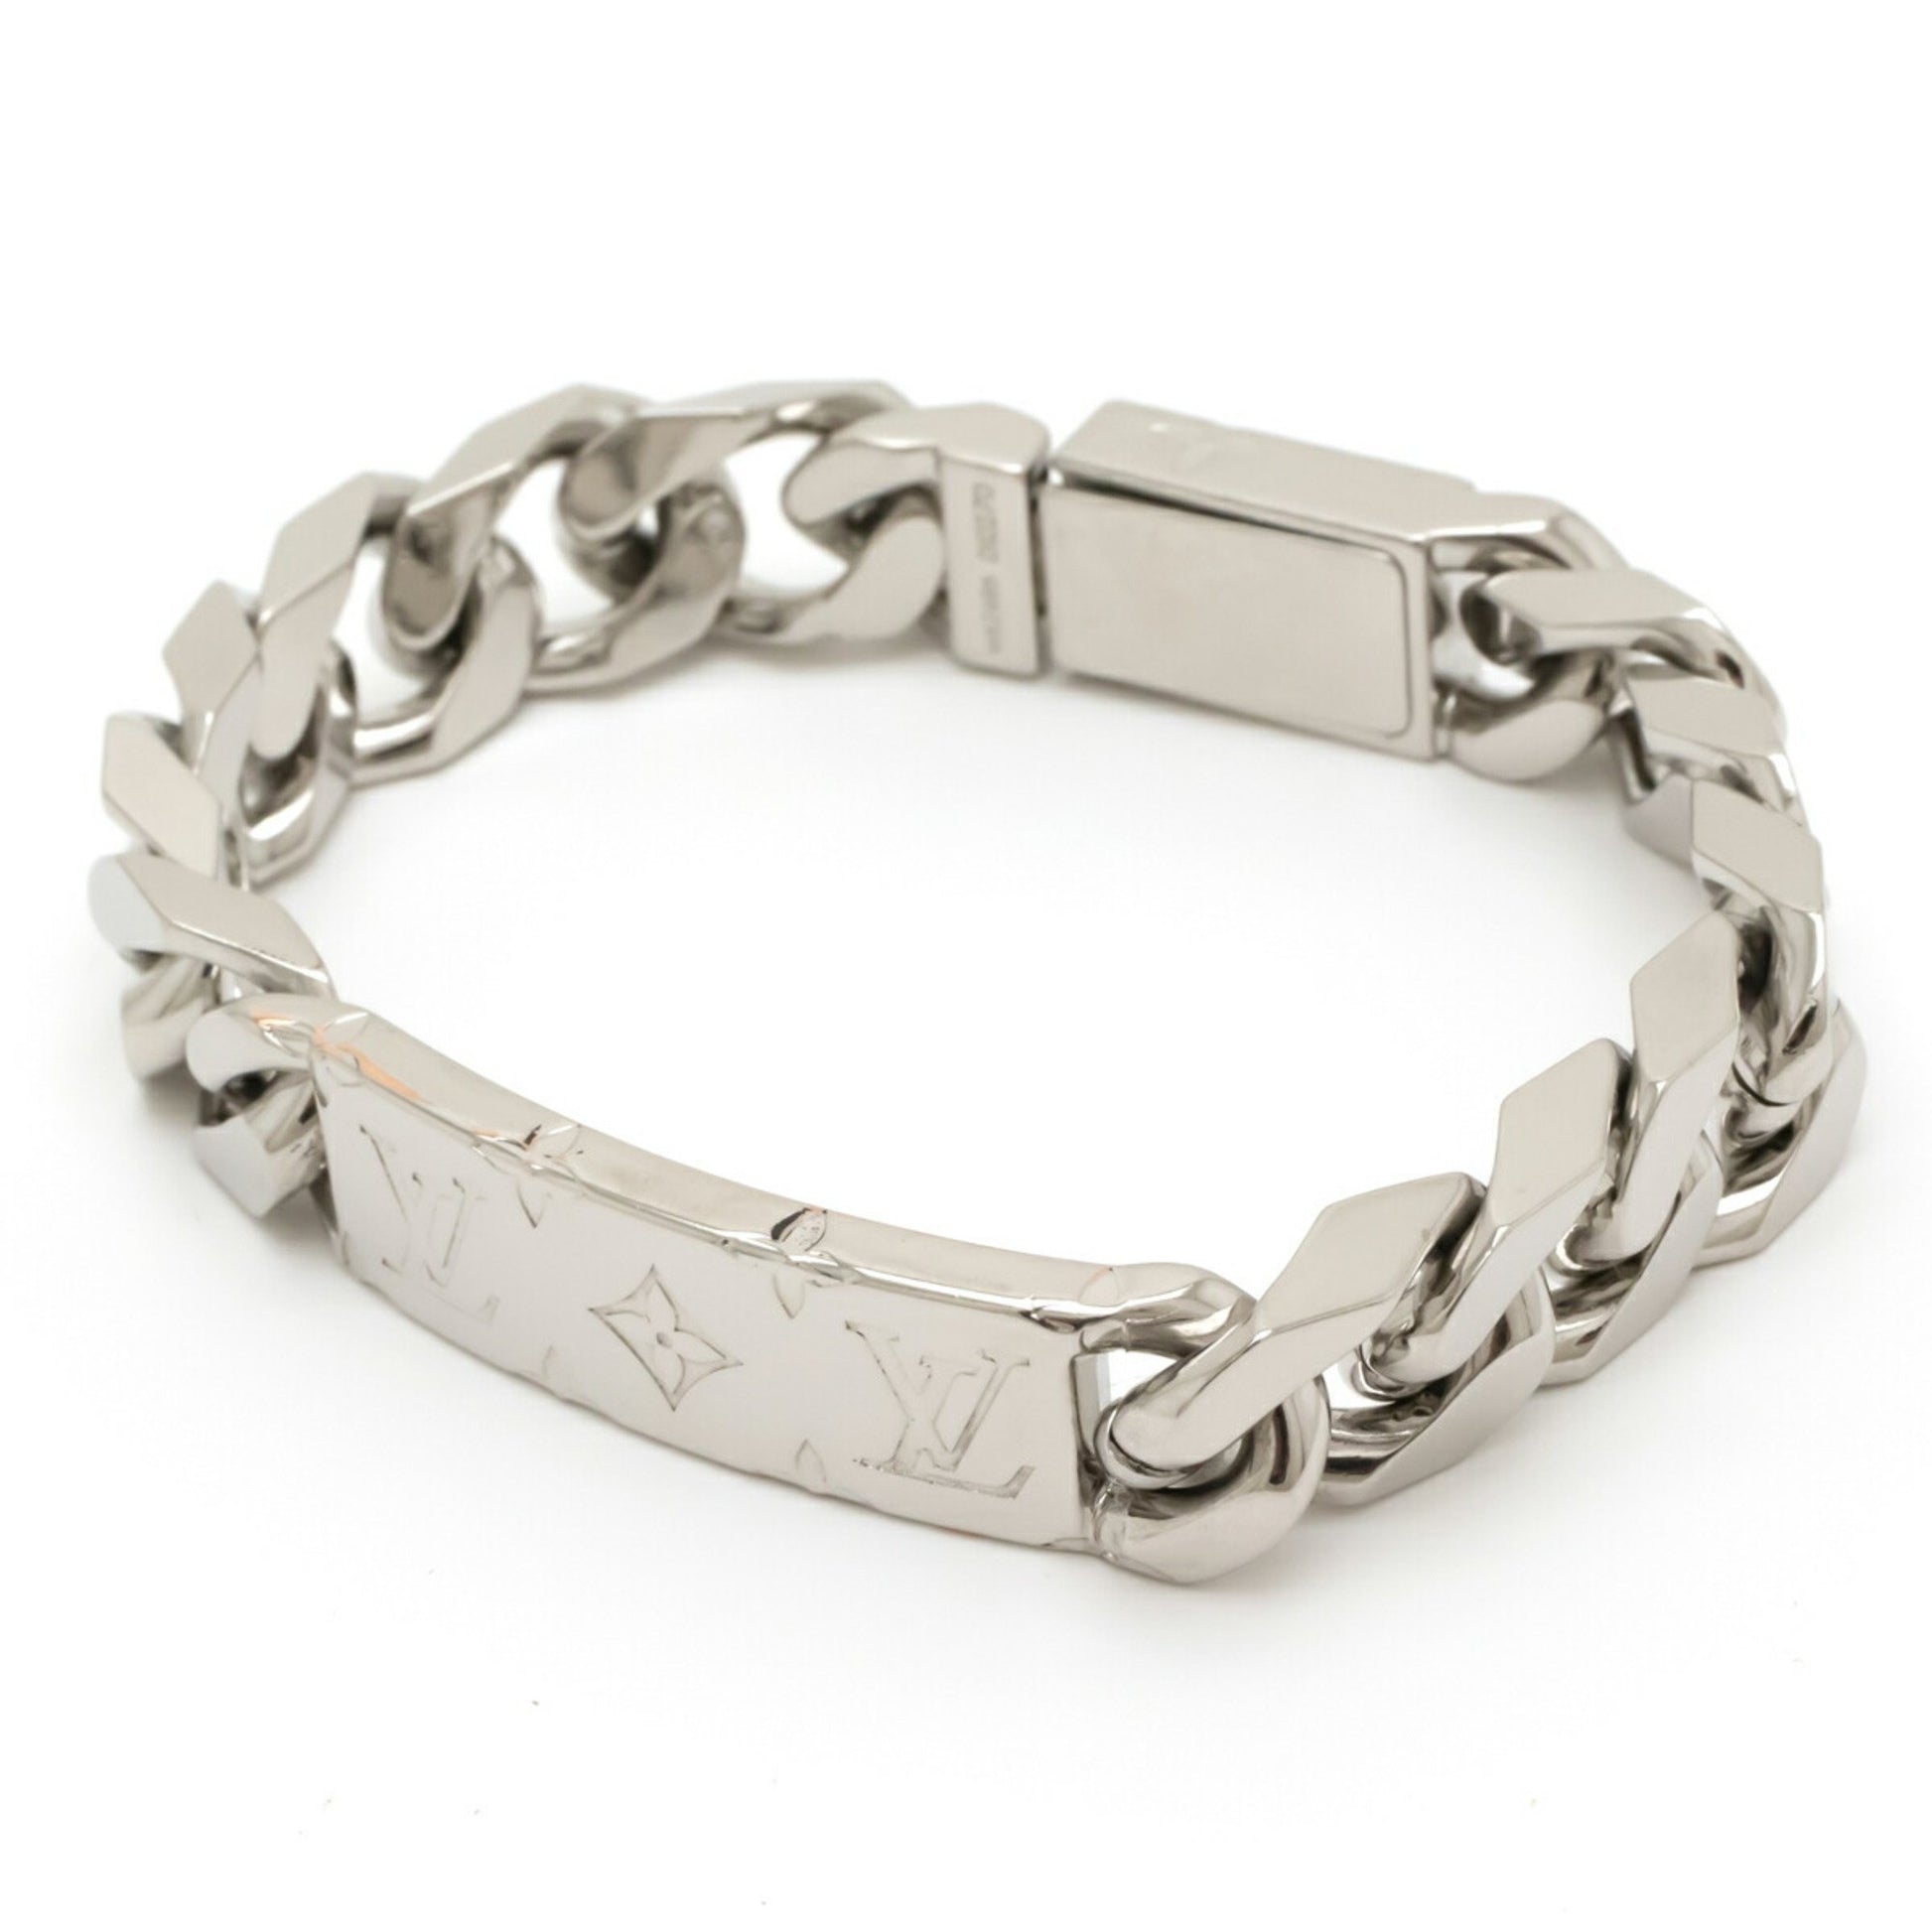 Louis Vuitton - Authenticated Monogram Bracelet - Silver for Women, Good Condition